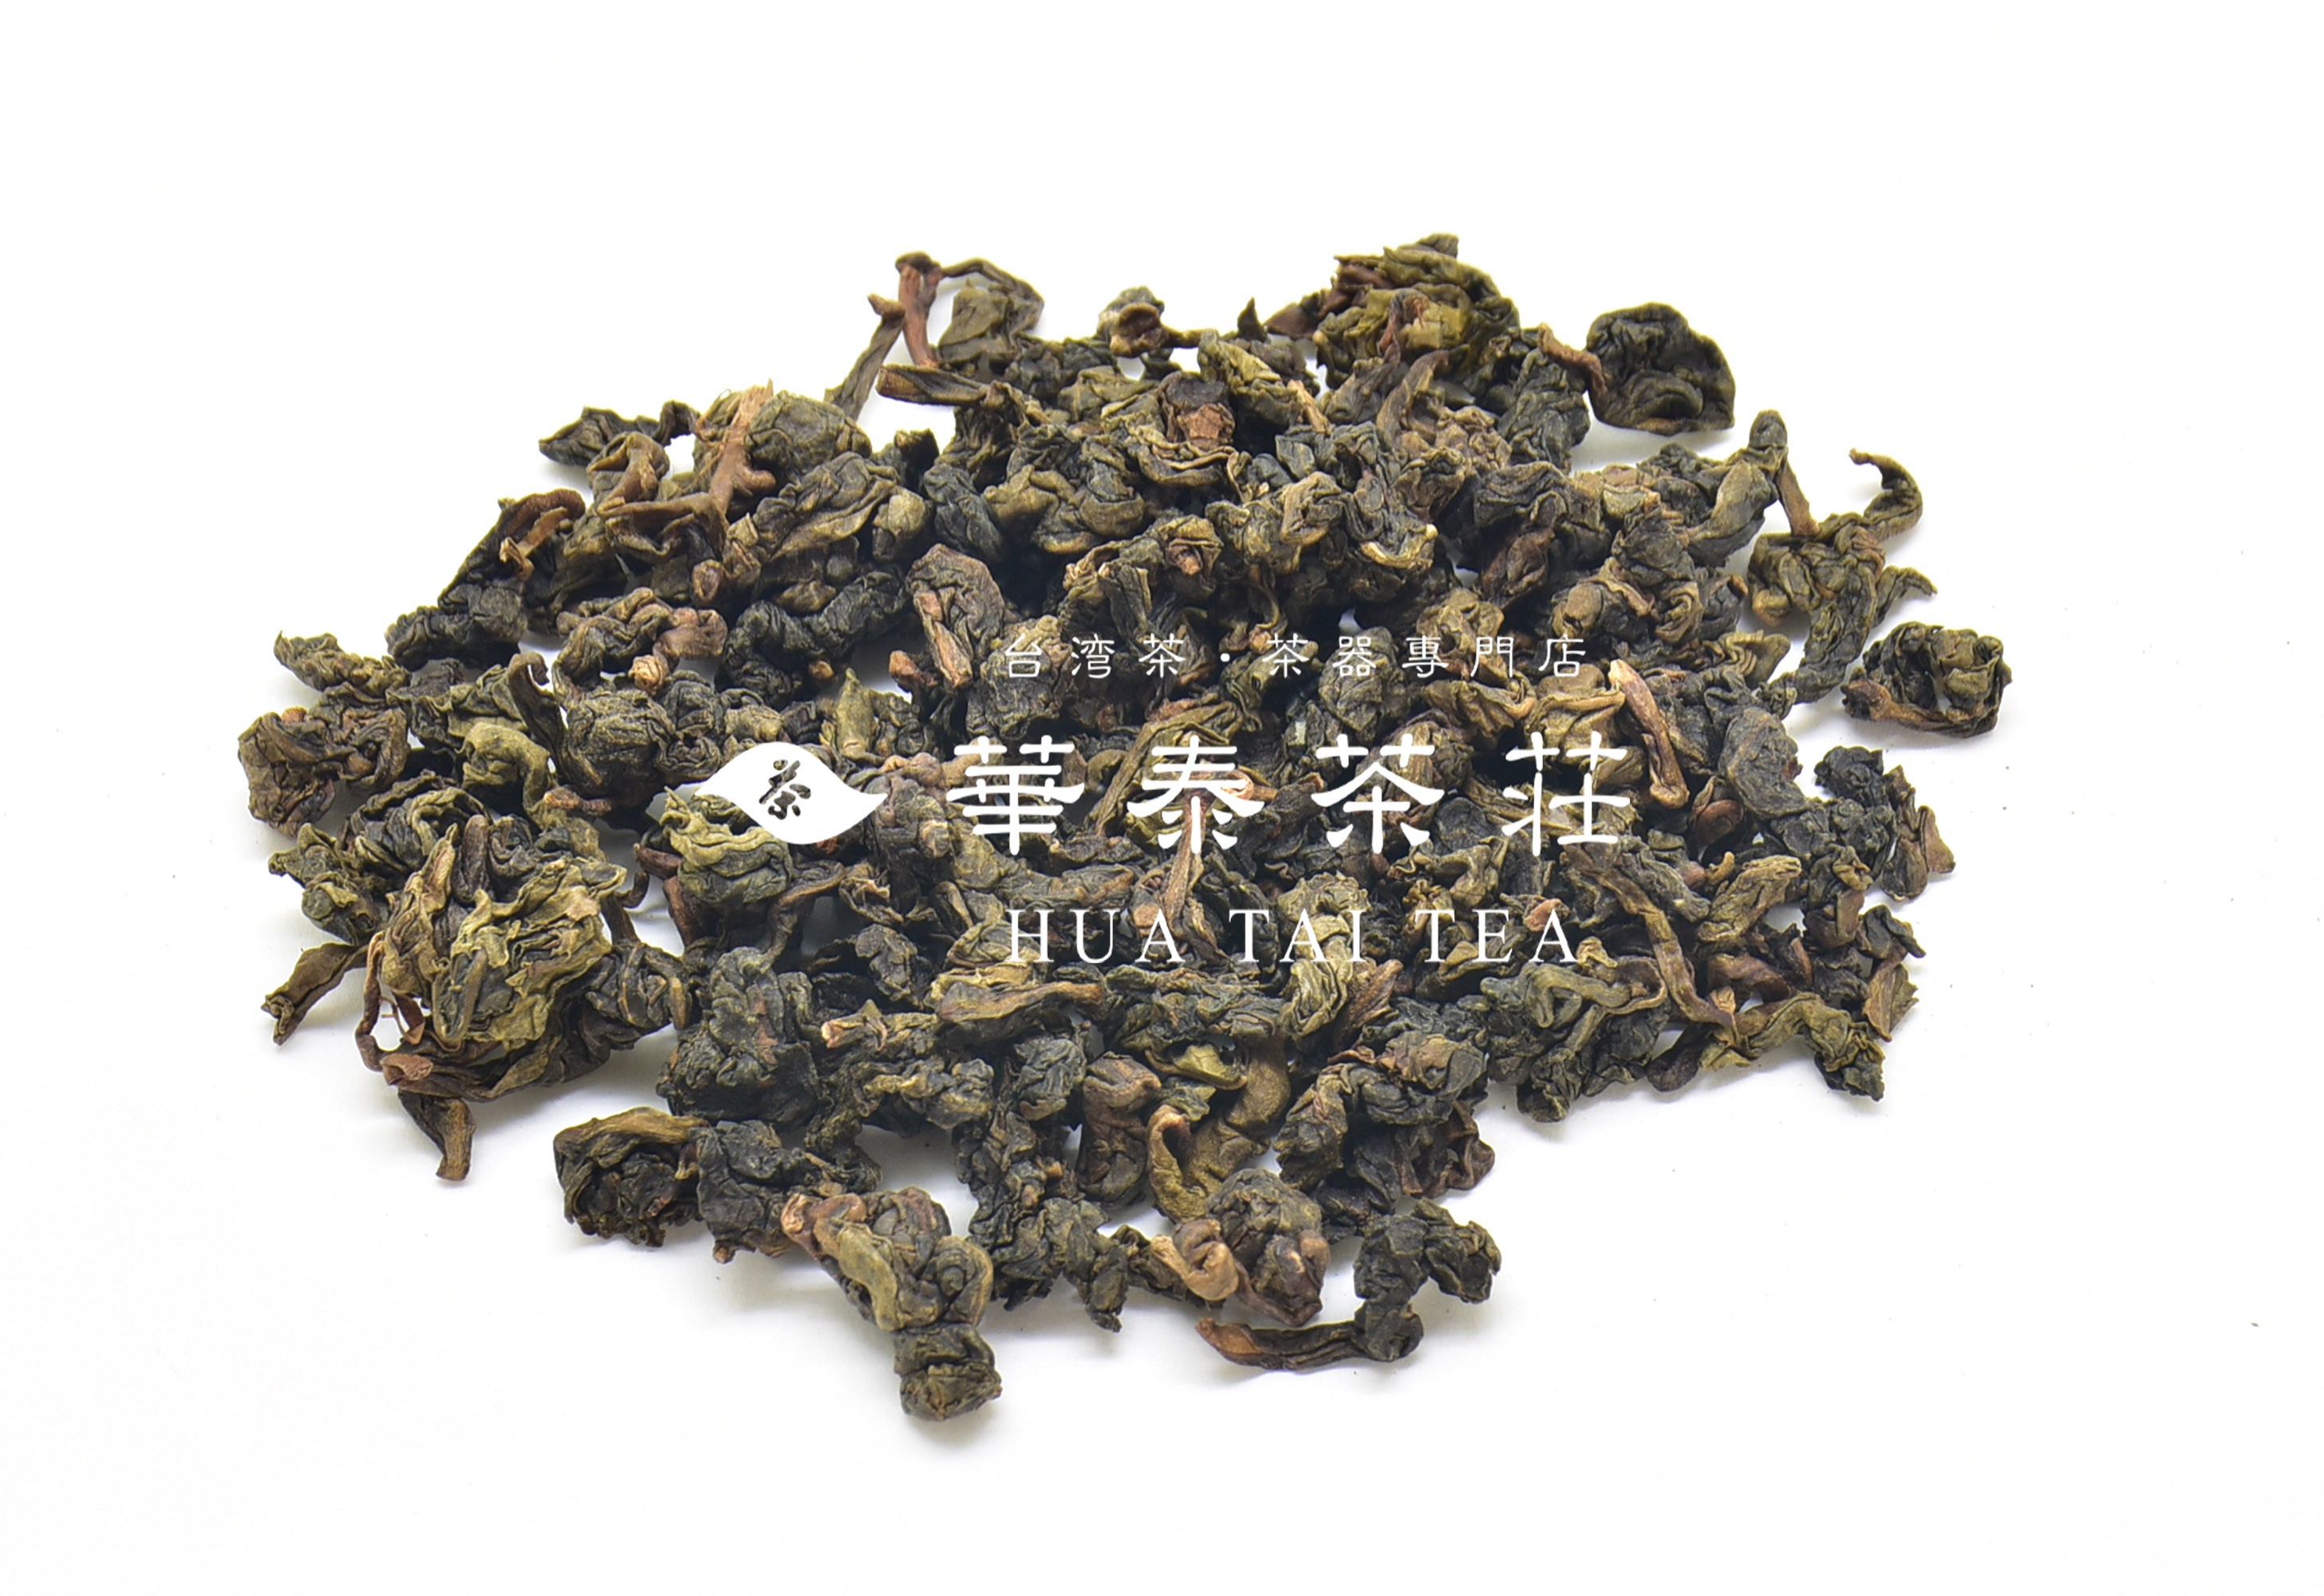 「華泰茶莊」鐵觀音茶(香特) 100G